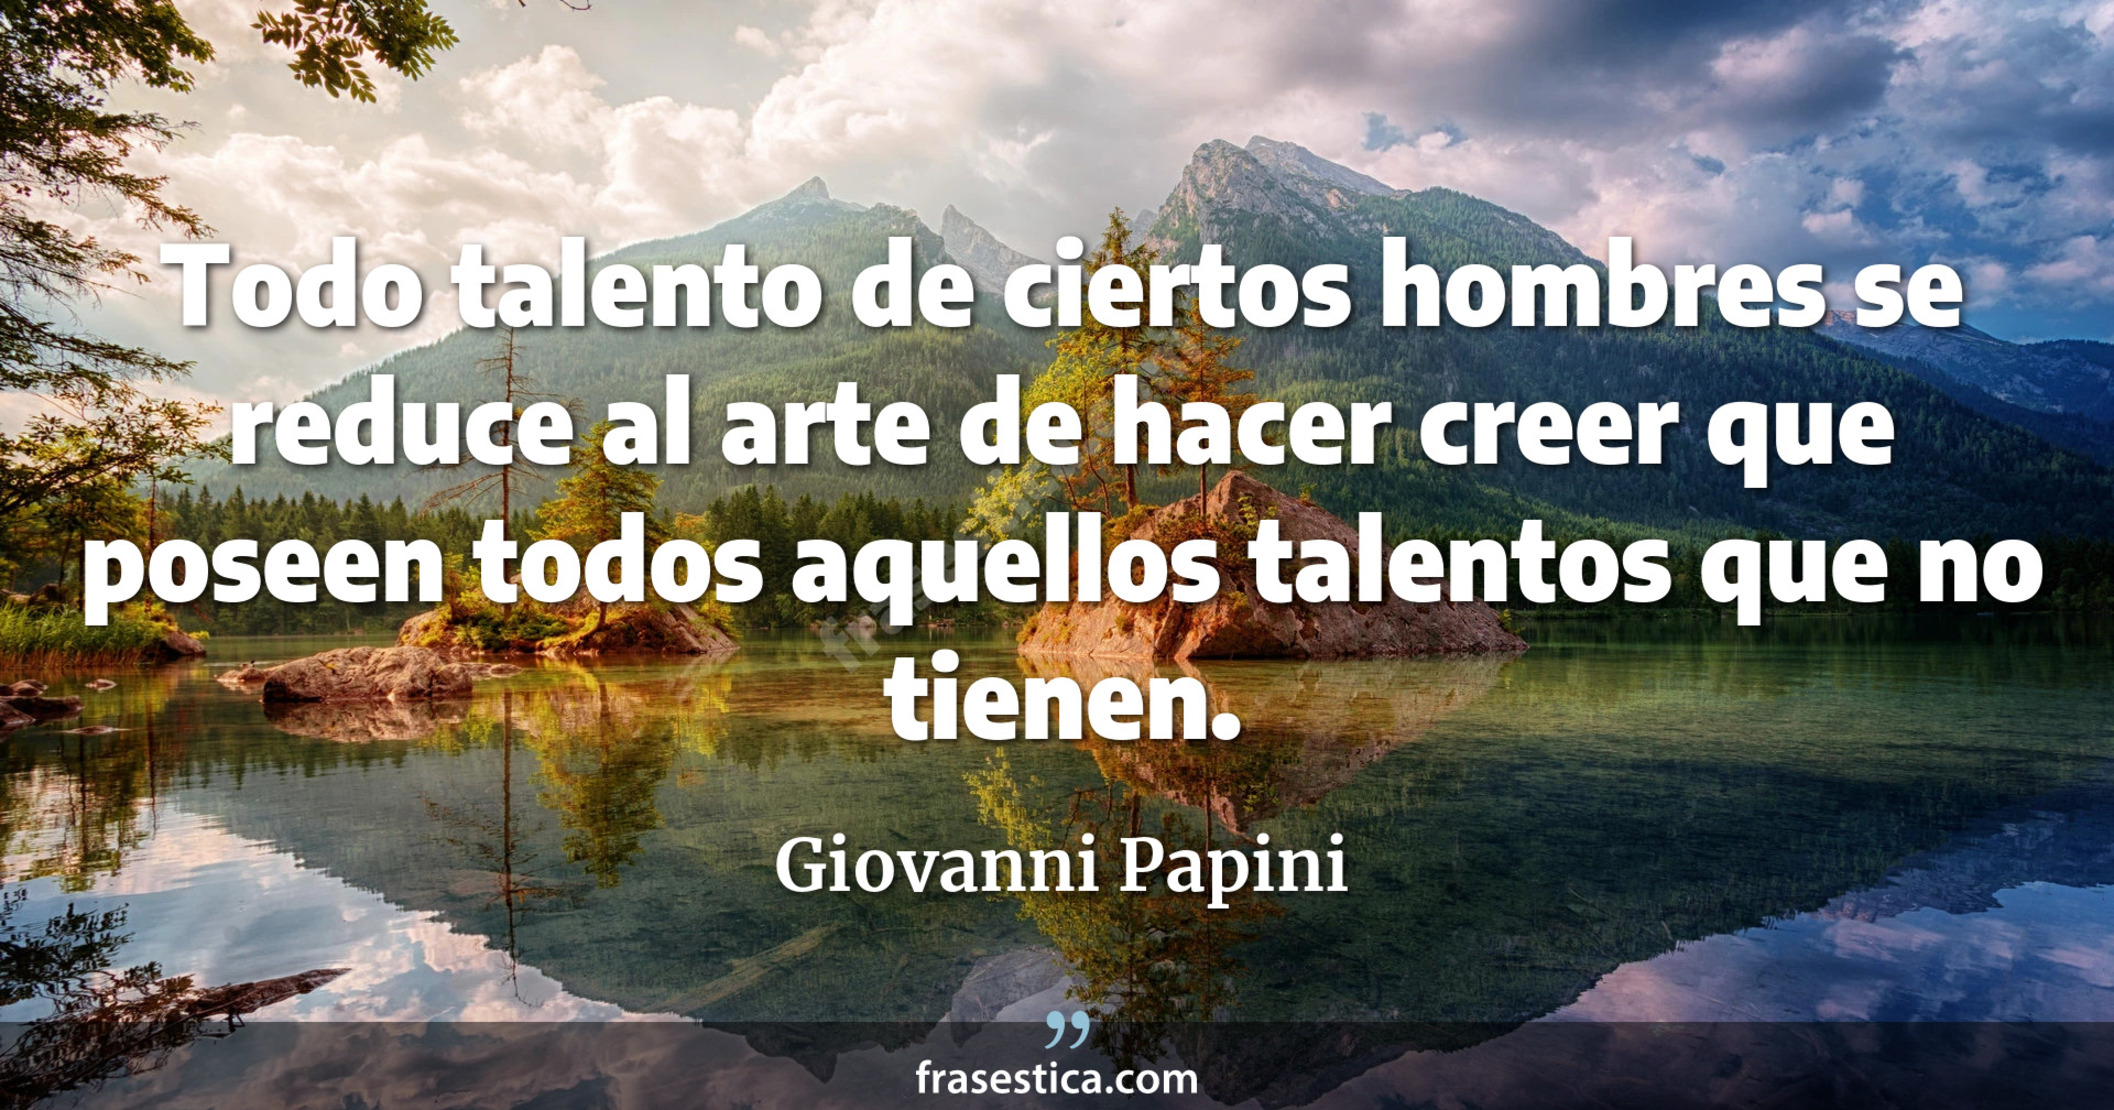 Todo talento de ciertos hombres se reduce al arte de hacer creer que poseen todos aquellos talentos que no tienen. - Giovanni Papini